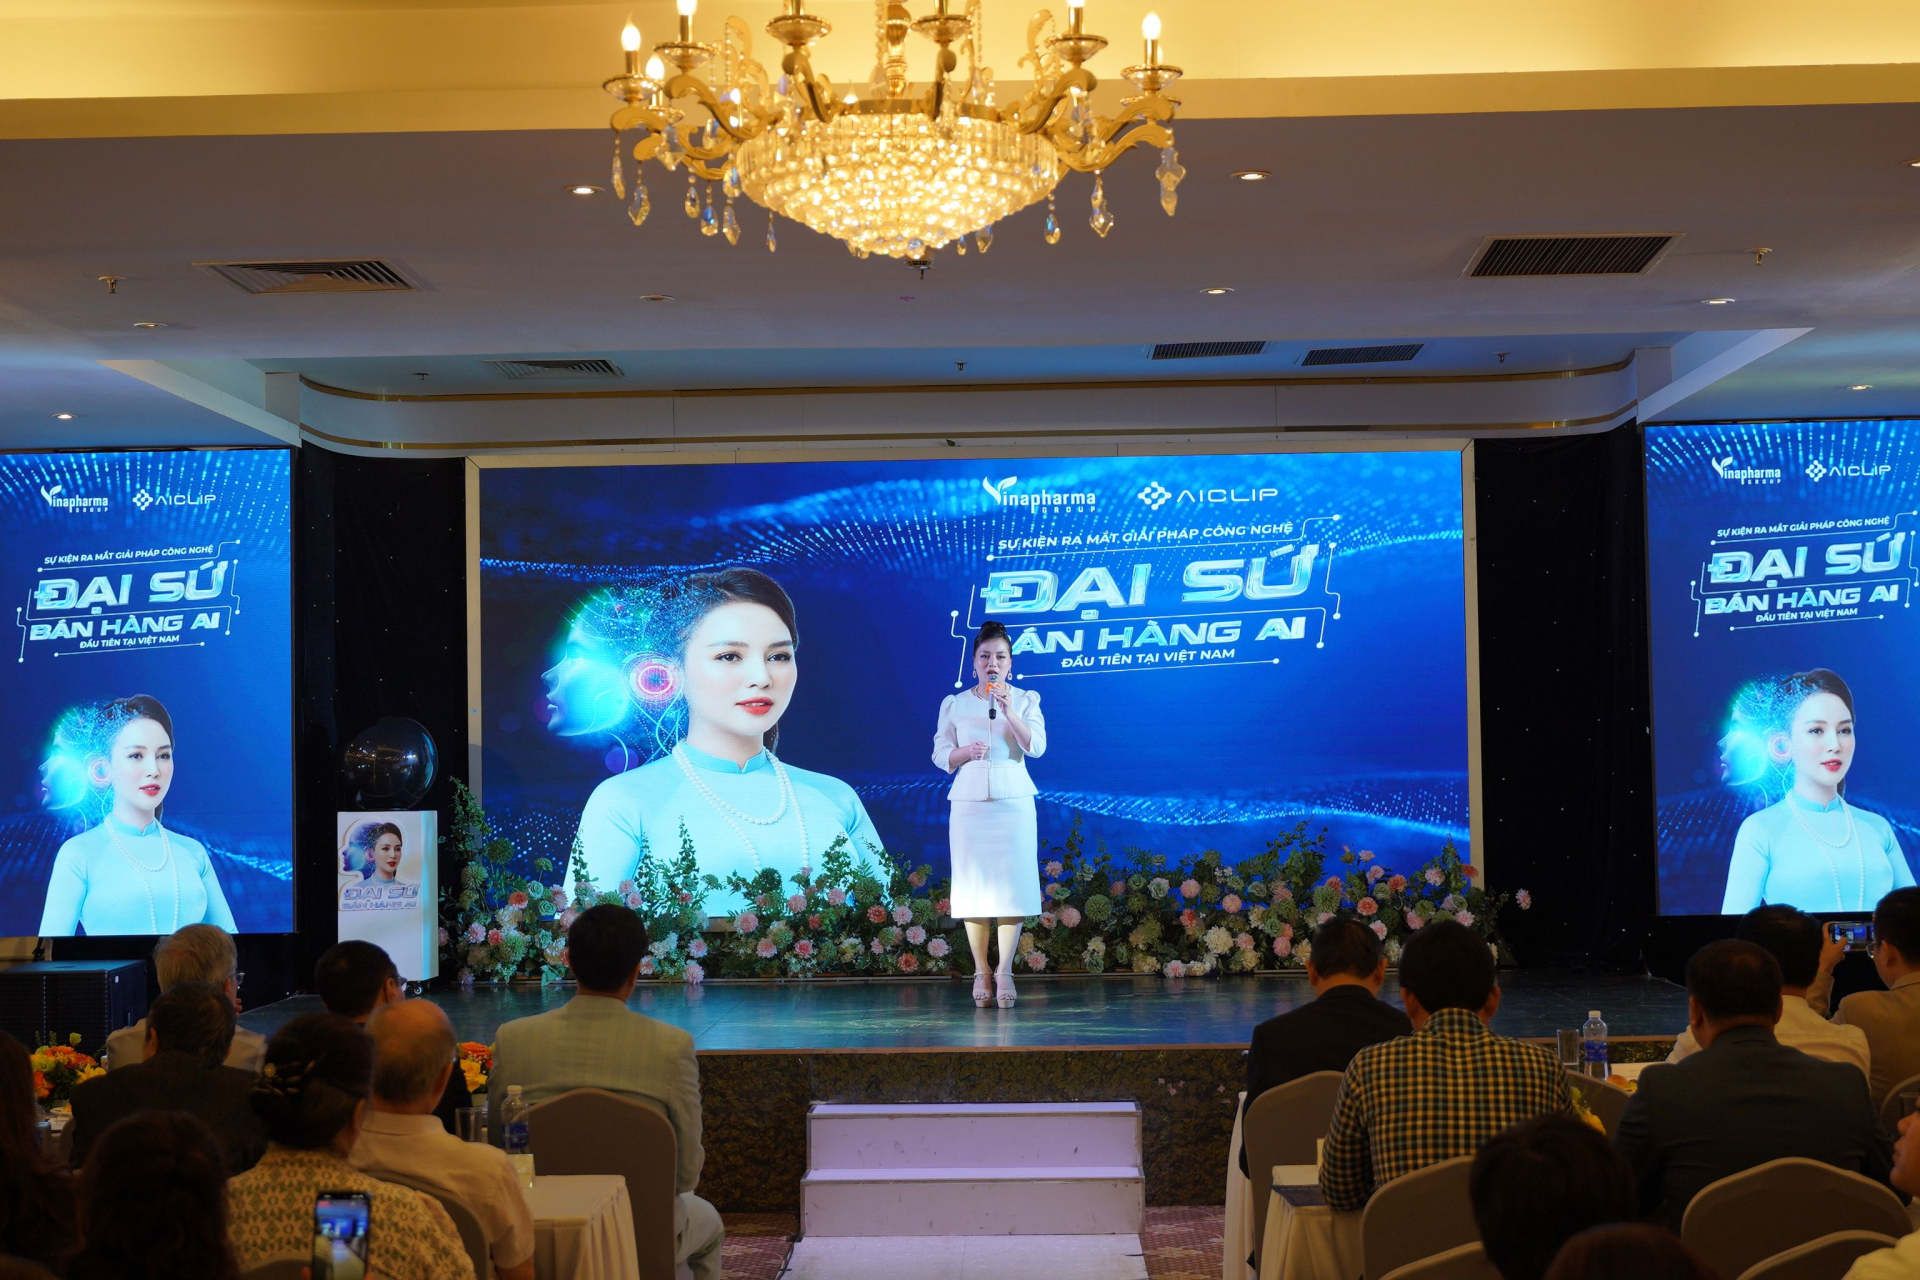 Đại sứ bán hàng AI đầu tiên tại Việt Nam: Có thể livestream 24/7 và thông thạo 60 ngôn ngữ, mức phí dưới 100 triệu/năm - ảnh 3